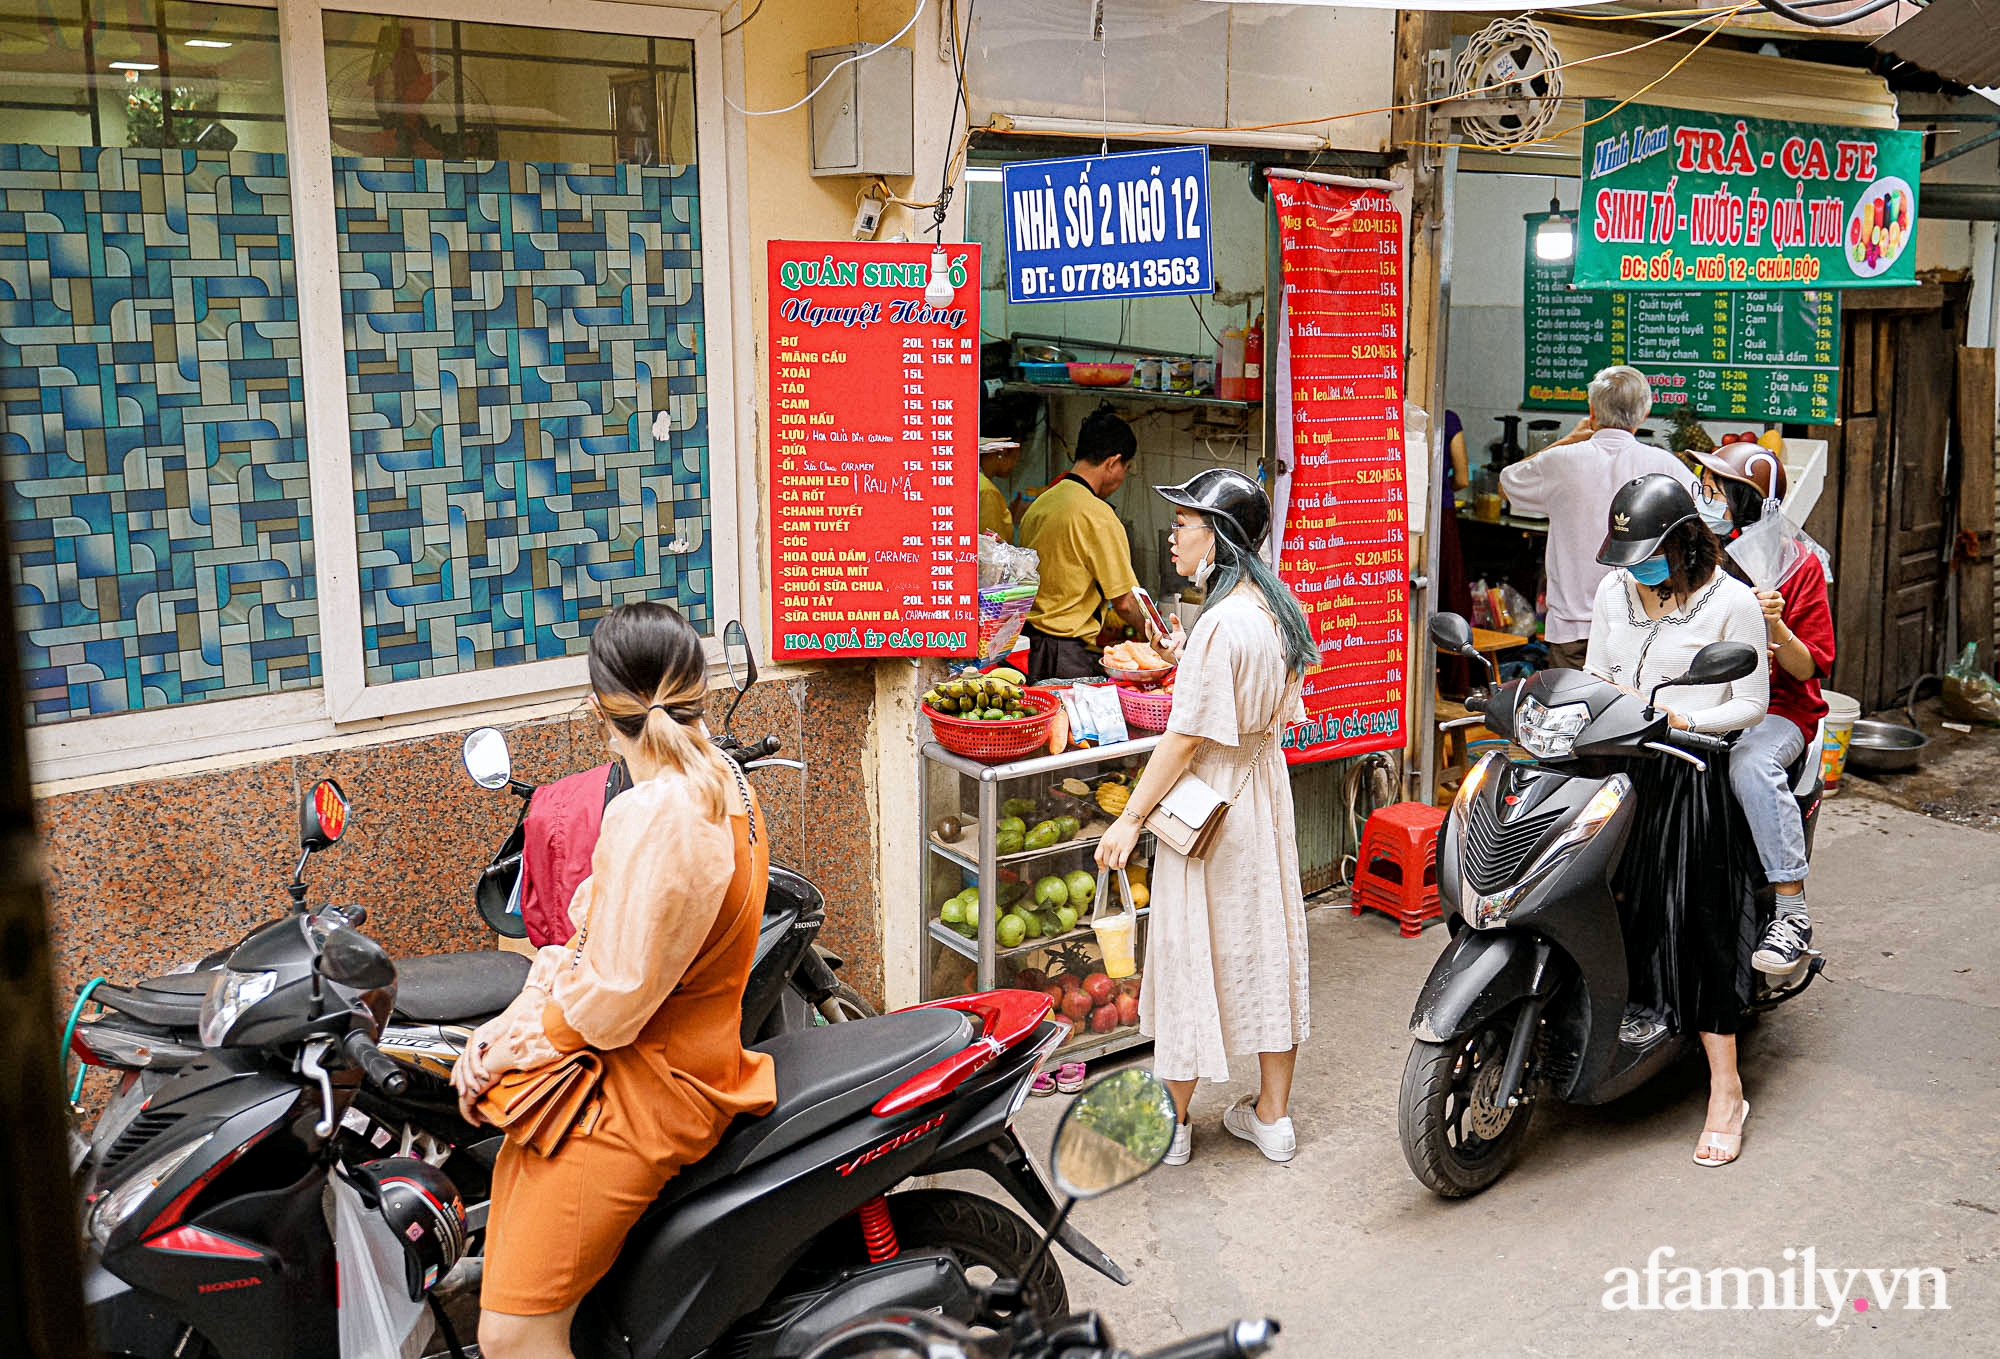 Nắng nóng mới bắt đầu, tiệm nước ép hoa quả chỉ 3m2 trong con ngõ bé xíu ở Hà Nội thu lời cả chục triệu nhờ bán 700 cốc mỗi ngày - Ảnh 3.